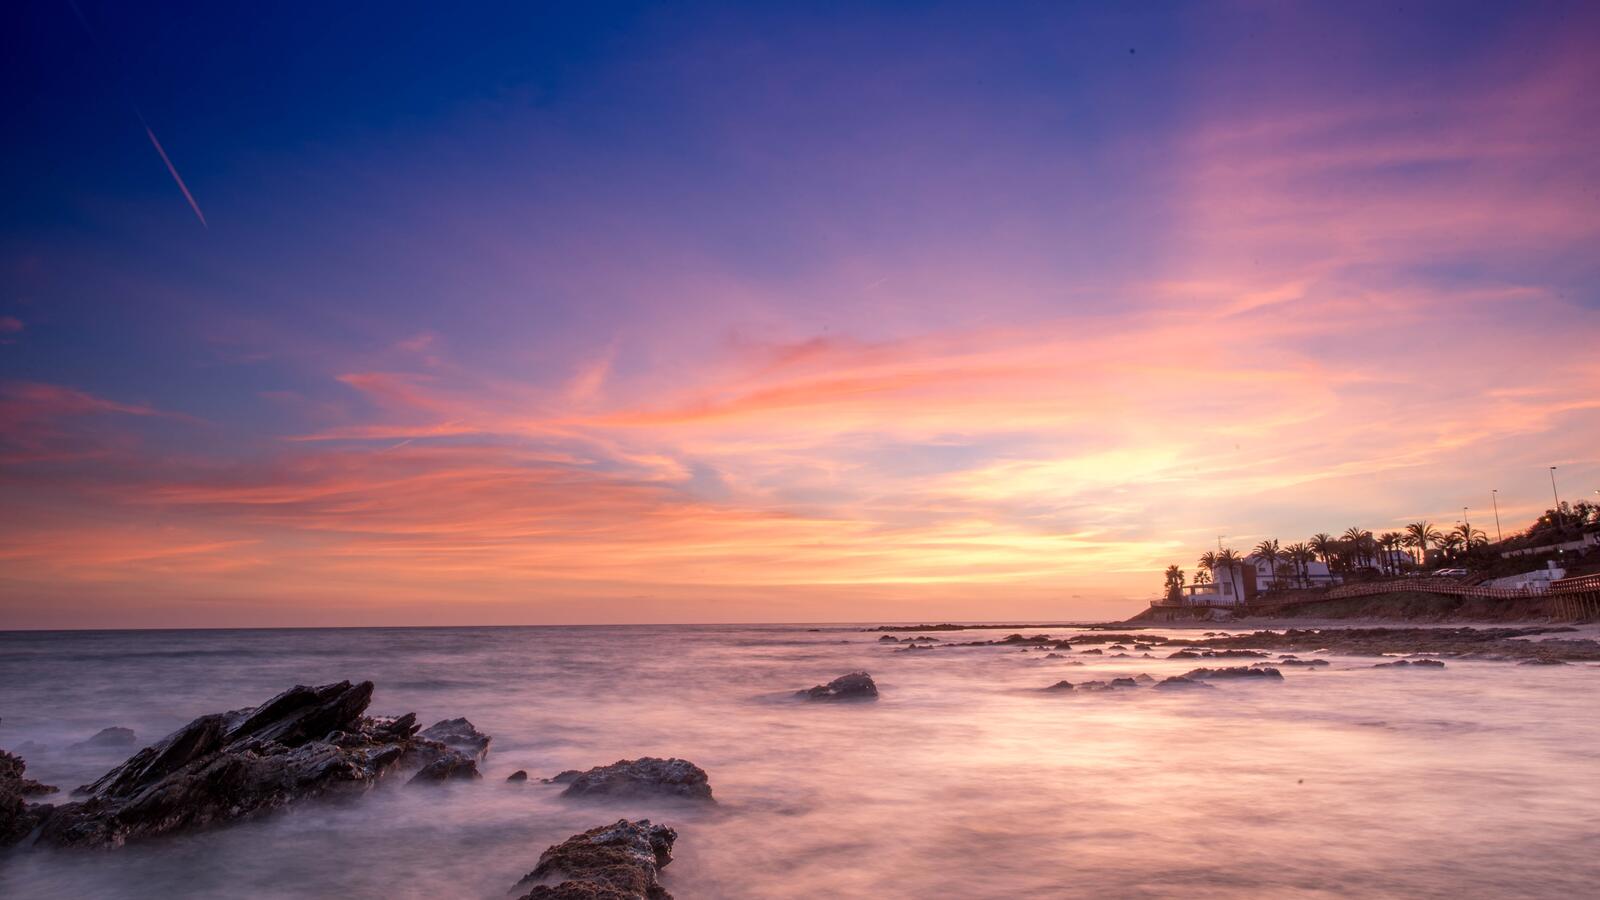 Бесплатное фото Пляжные дома на берегу моря при закате дня и падающем метеорите в небе